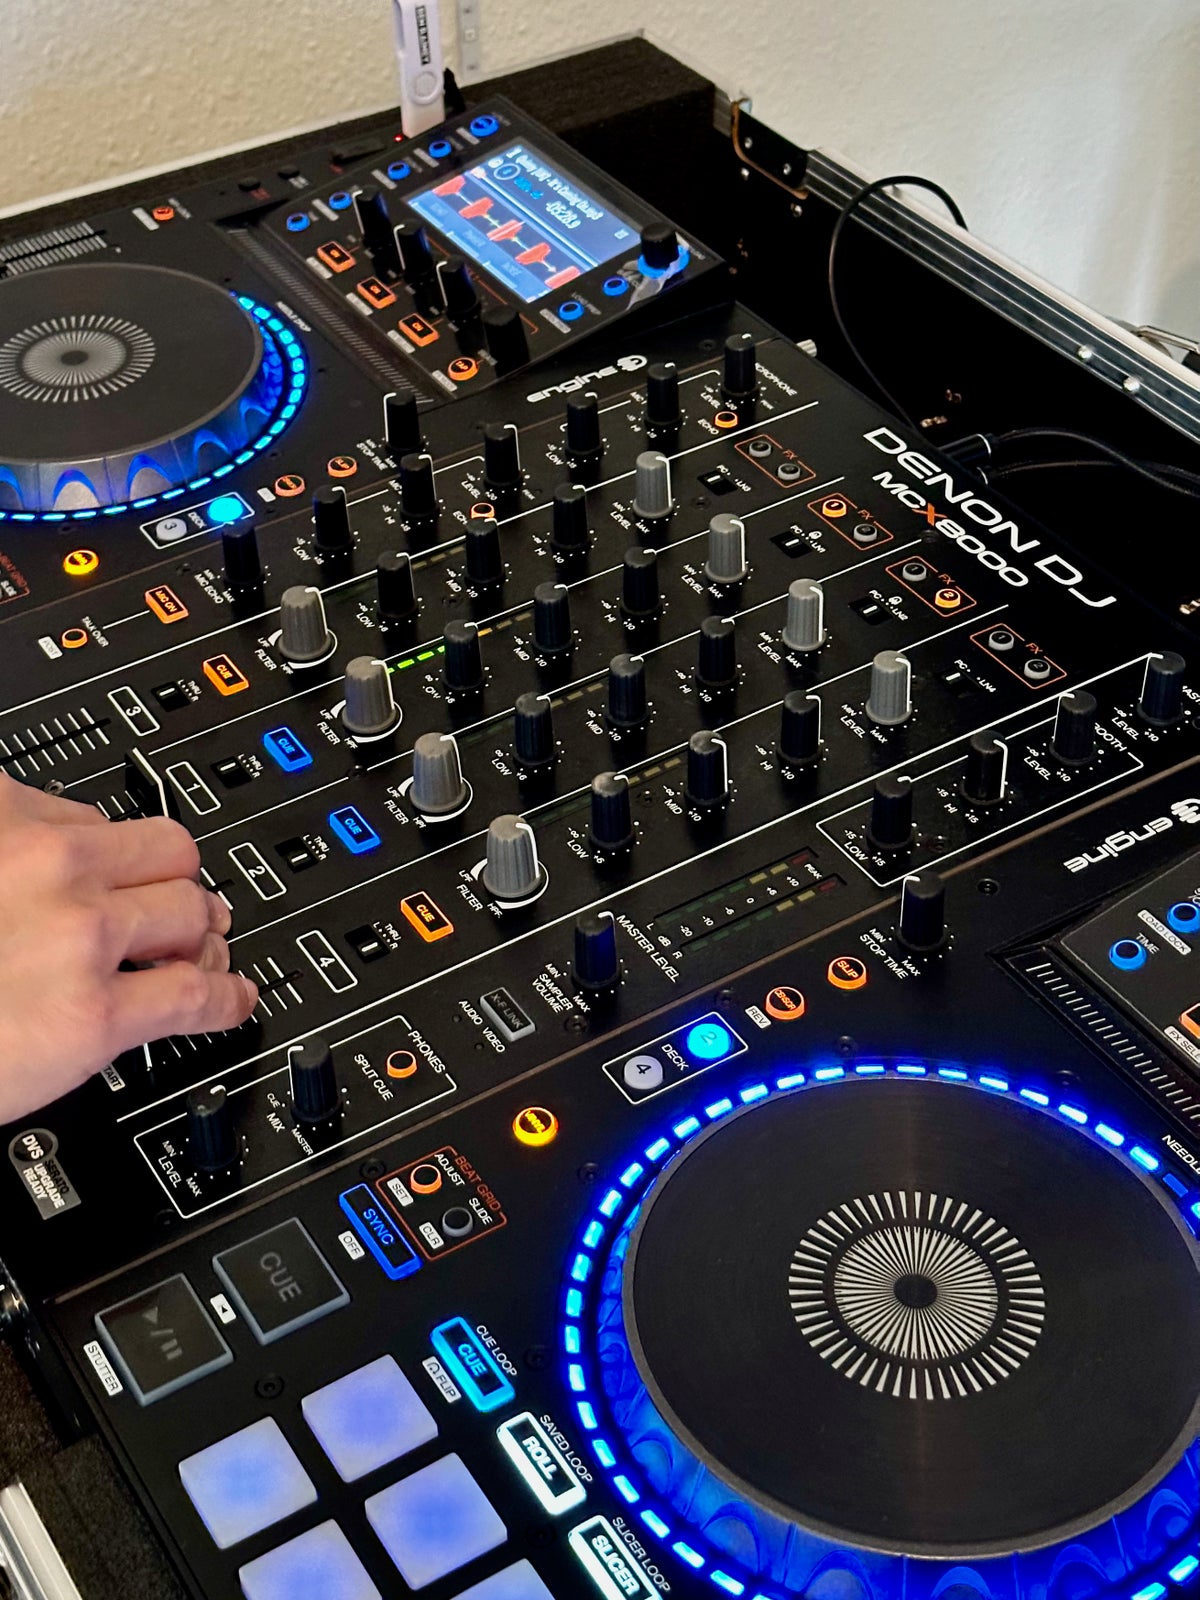 DJ controller all-in-one, Denon MCX8000